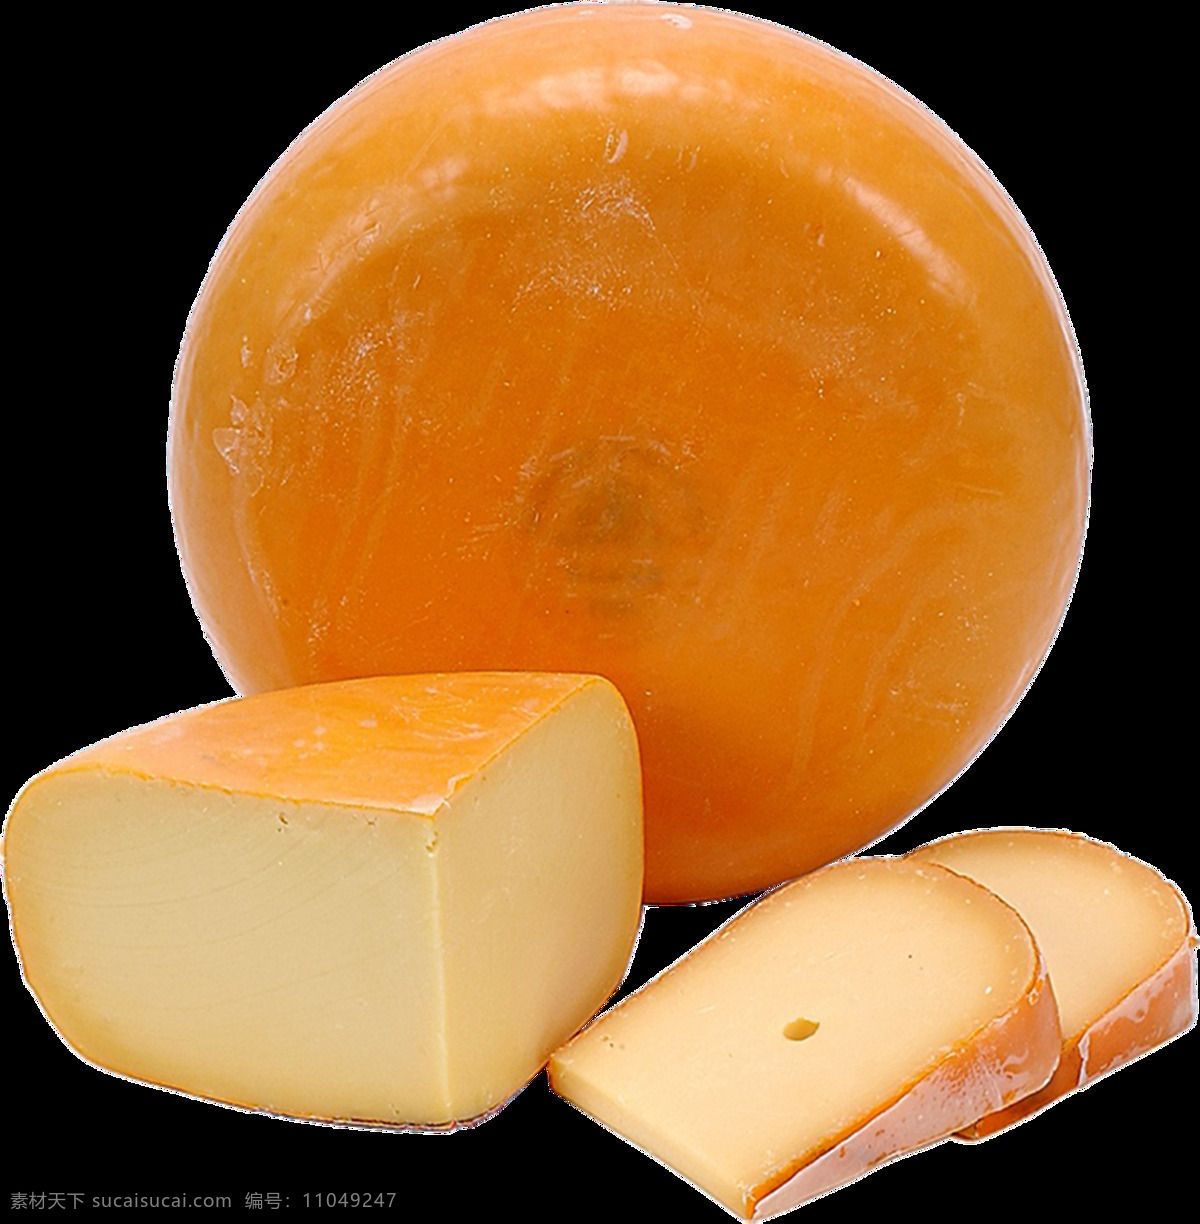 芝士图片 奶酪 芝士 乳酪 芝士块 大块芝士 大块奶酪 芝士片 乳酪片 干酪 起司 奶豆腐 png图 透明图 免扣图 透明背景 透明底 抠图